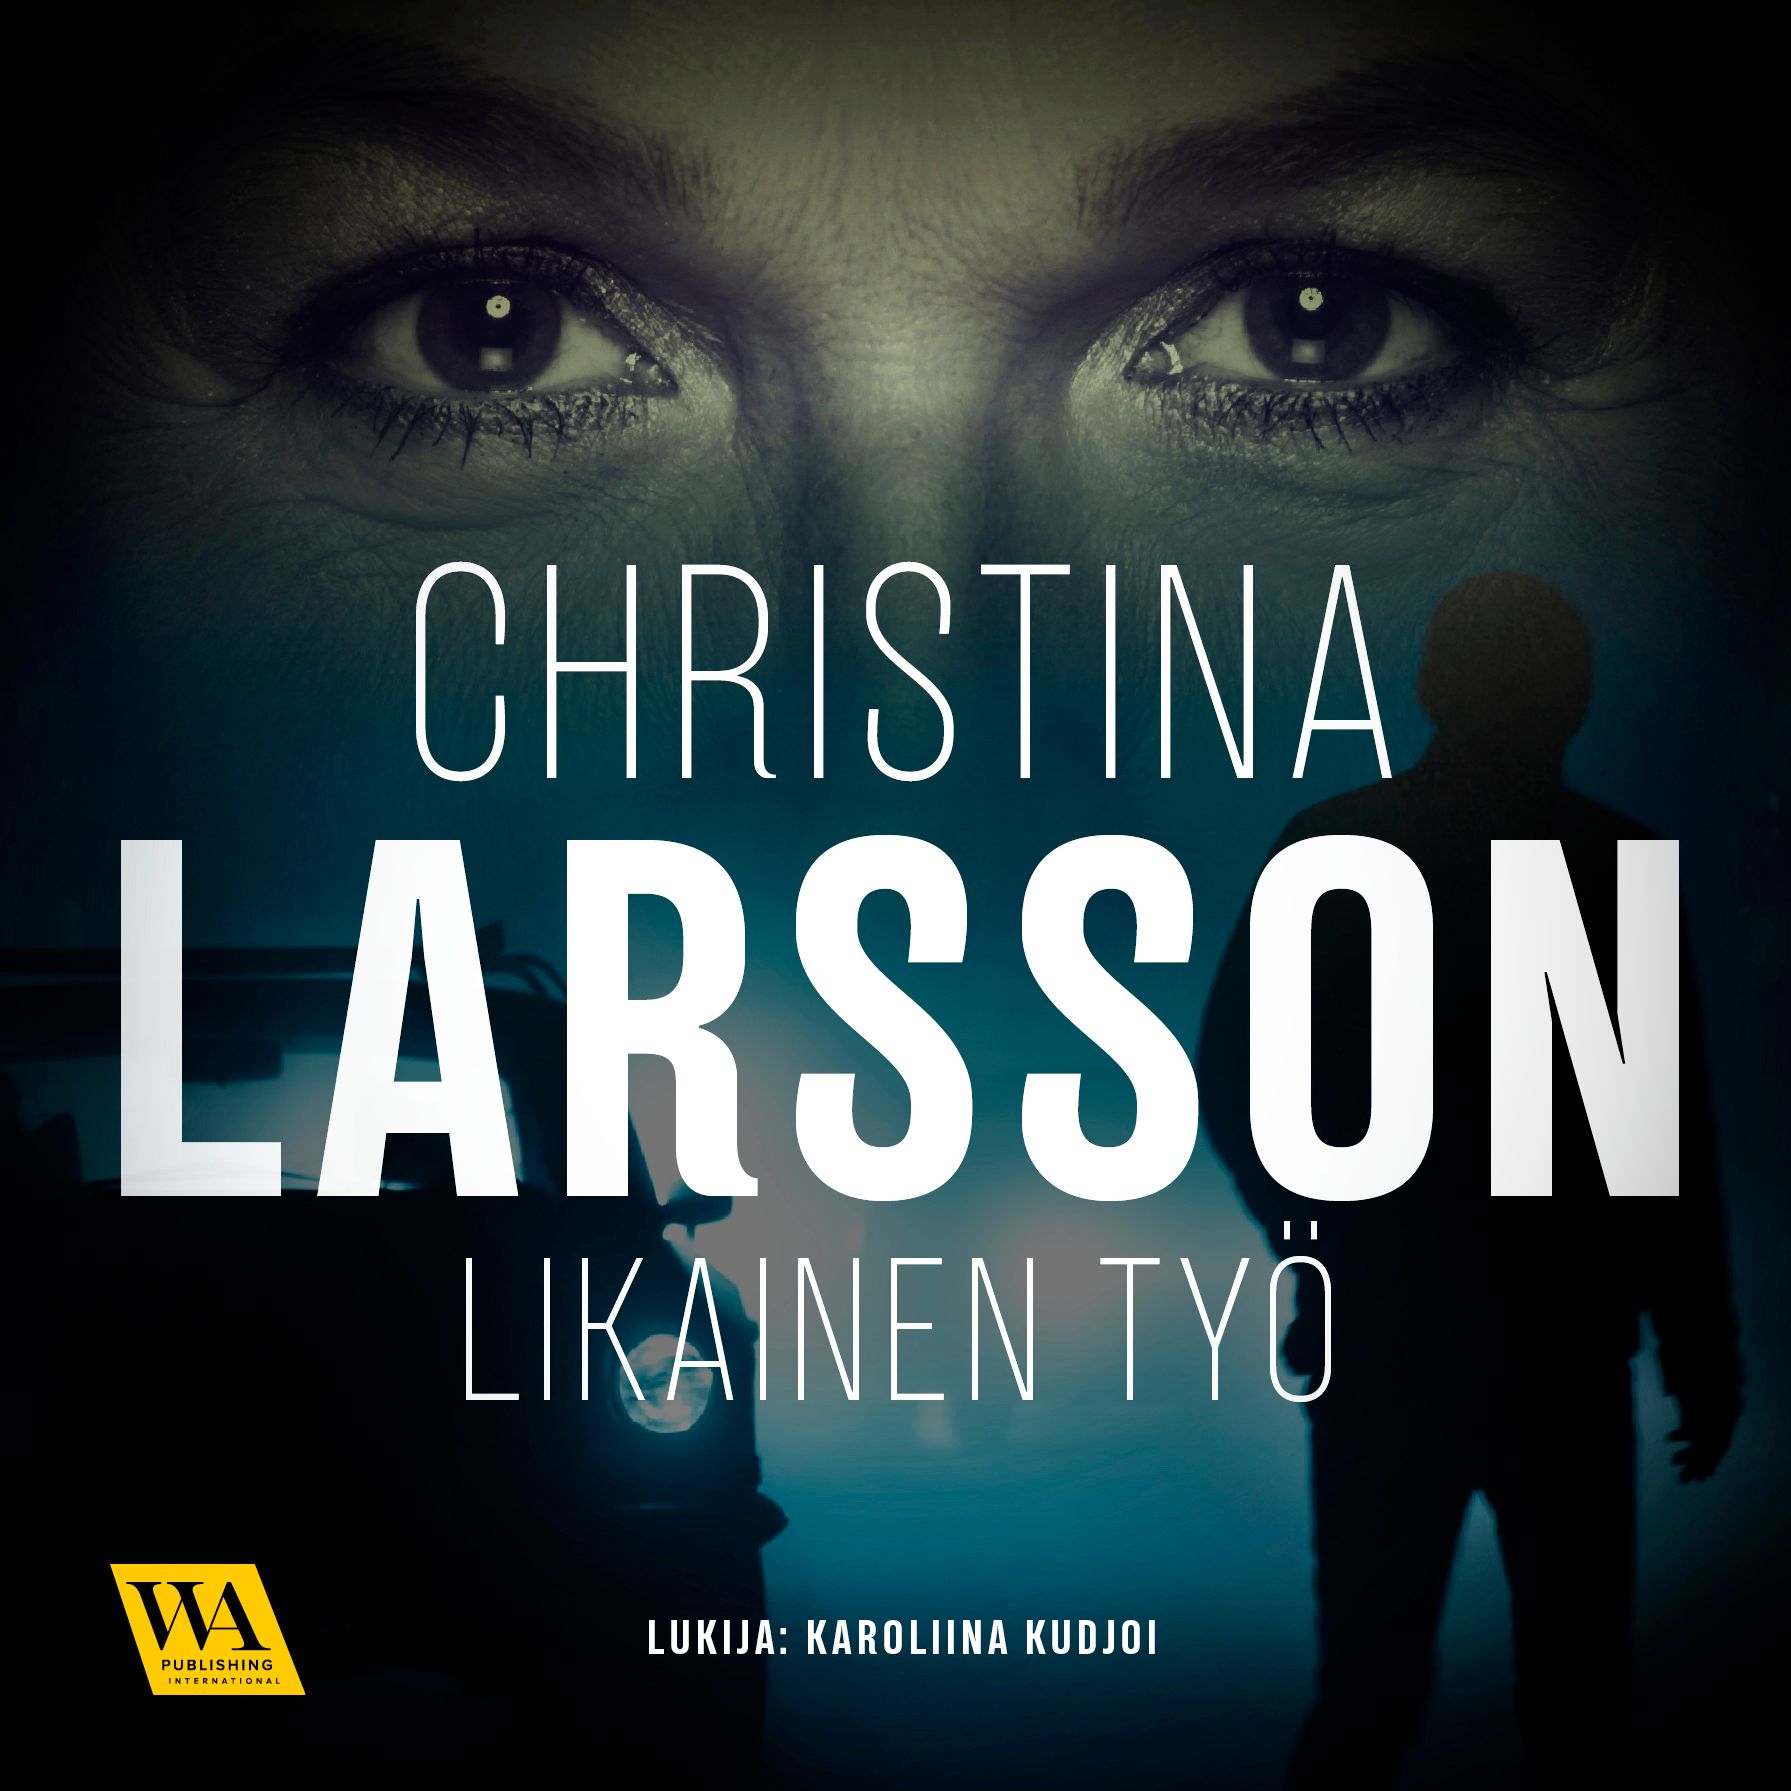 Likainen työ, lydbog af Christina Larsson